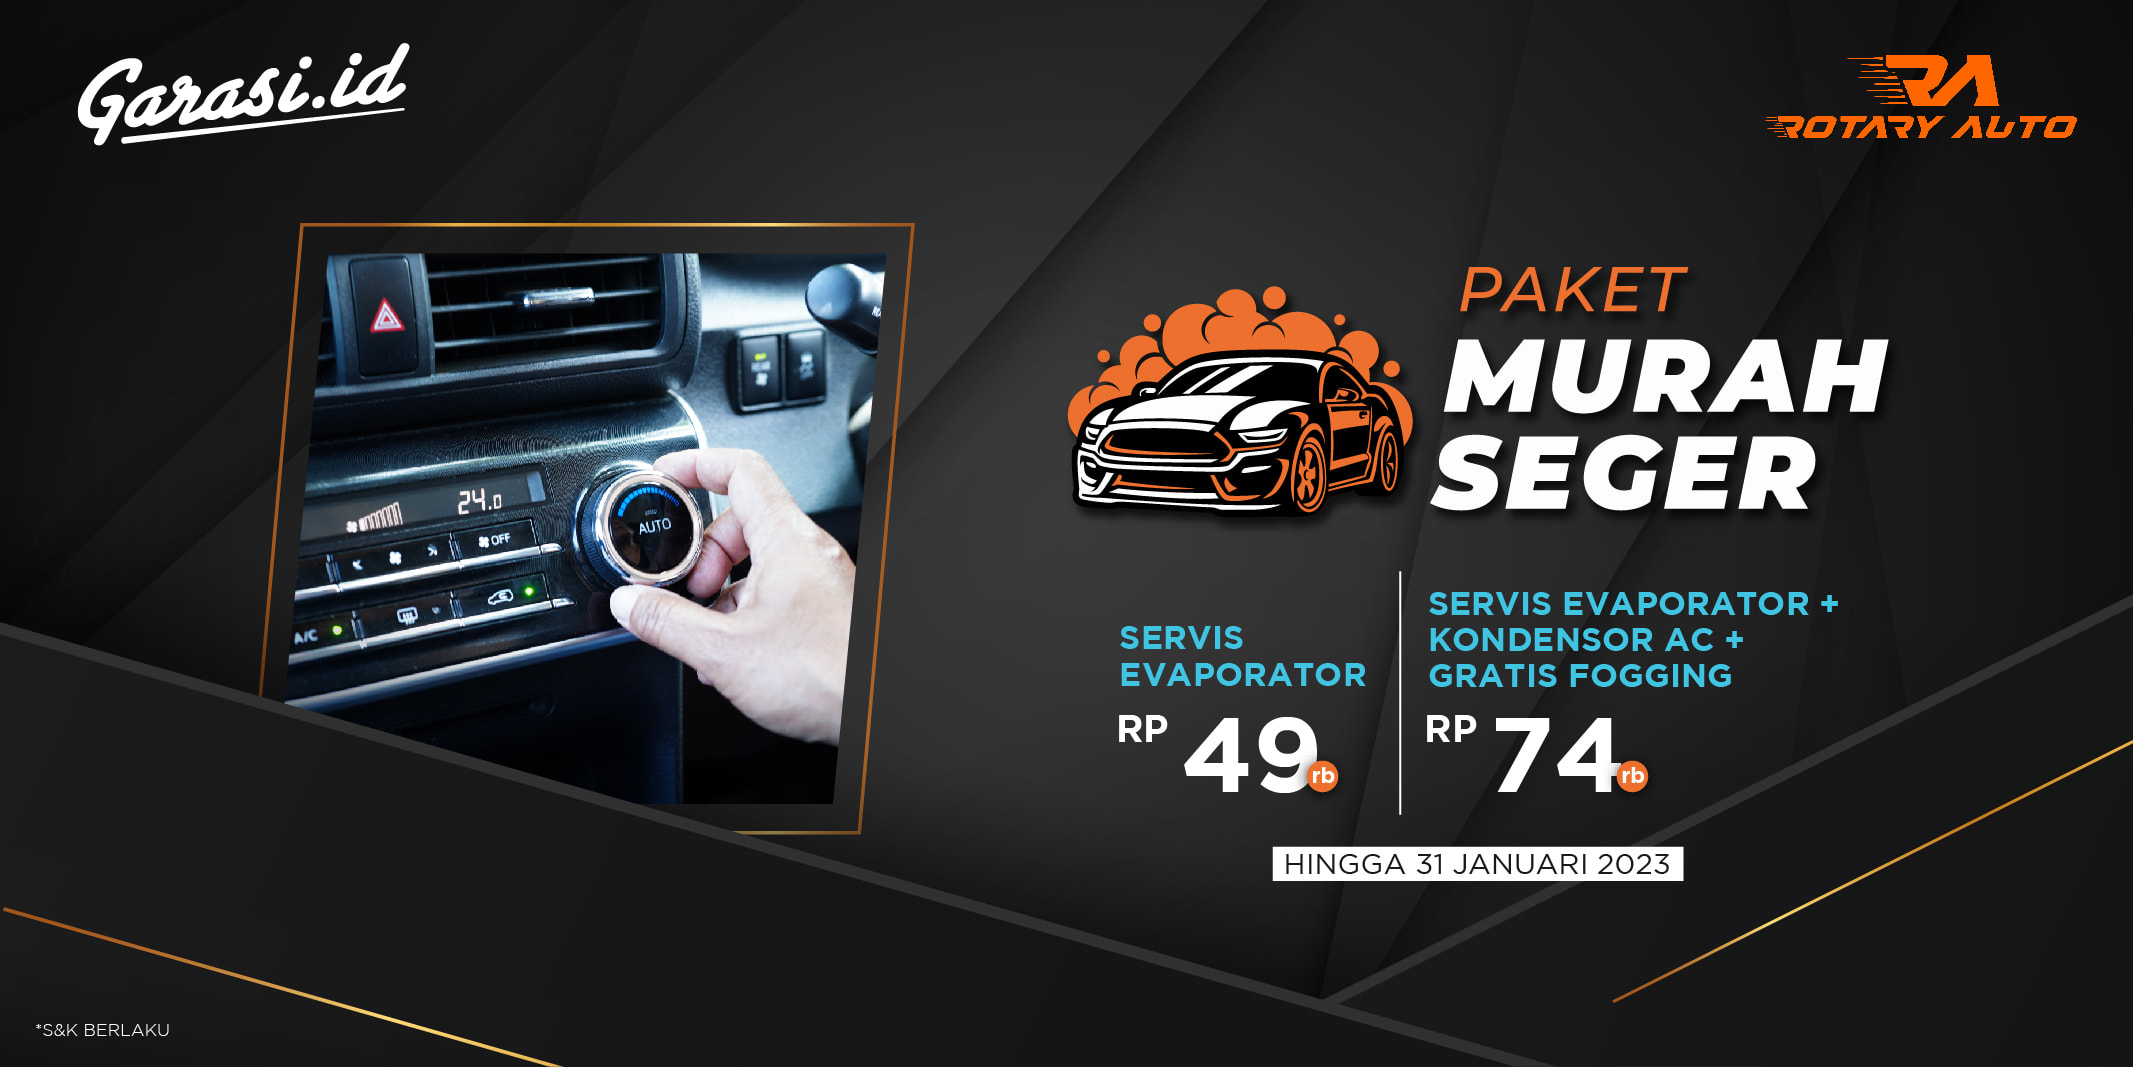 Nikmati promo Paket Murah Seger servis AC mobil dari Rotary Auto mulai dari Rp 49.000,-. Syarat dan ketentuan berlaku, baca deskripsi produk untuk informasi lebih lanjut.